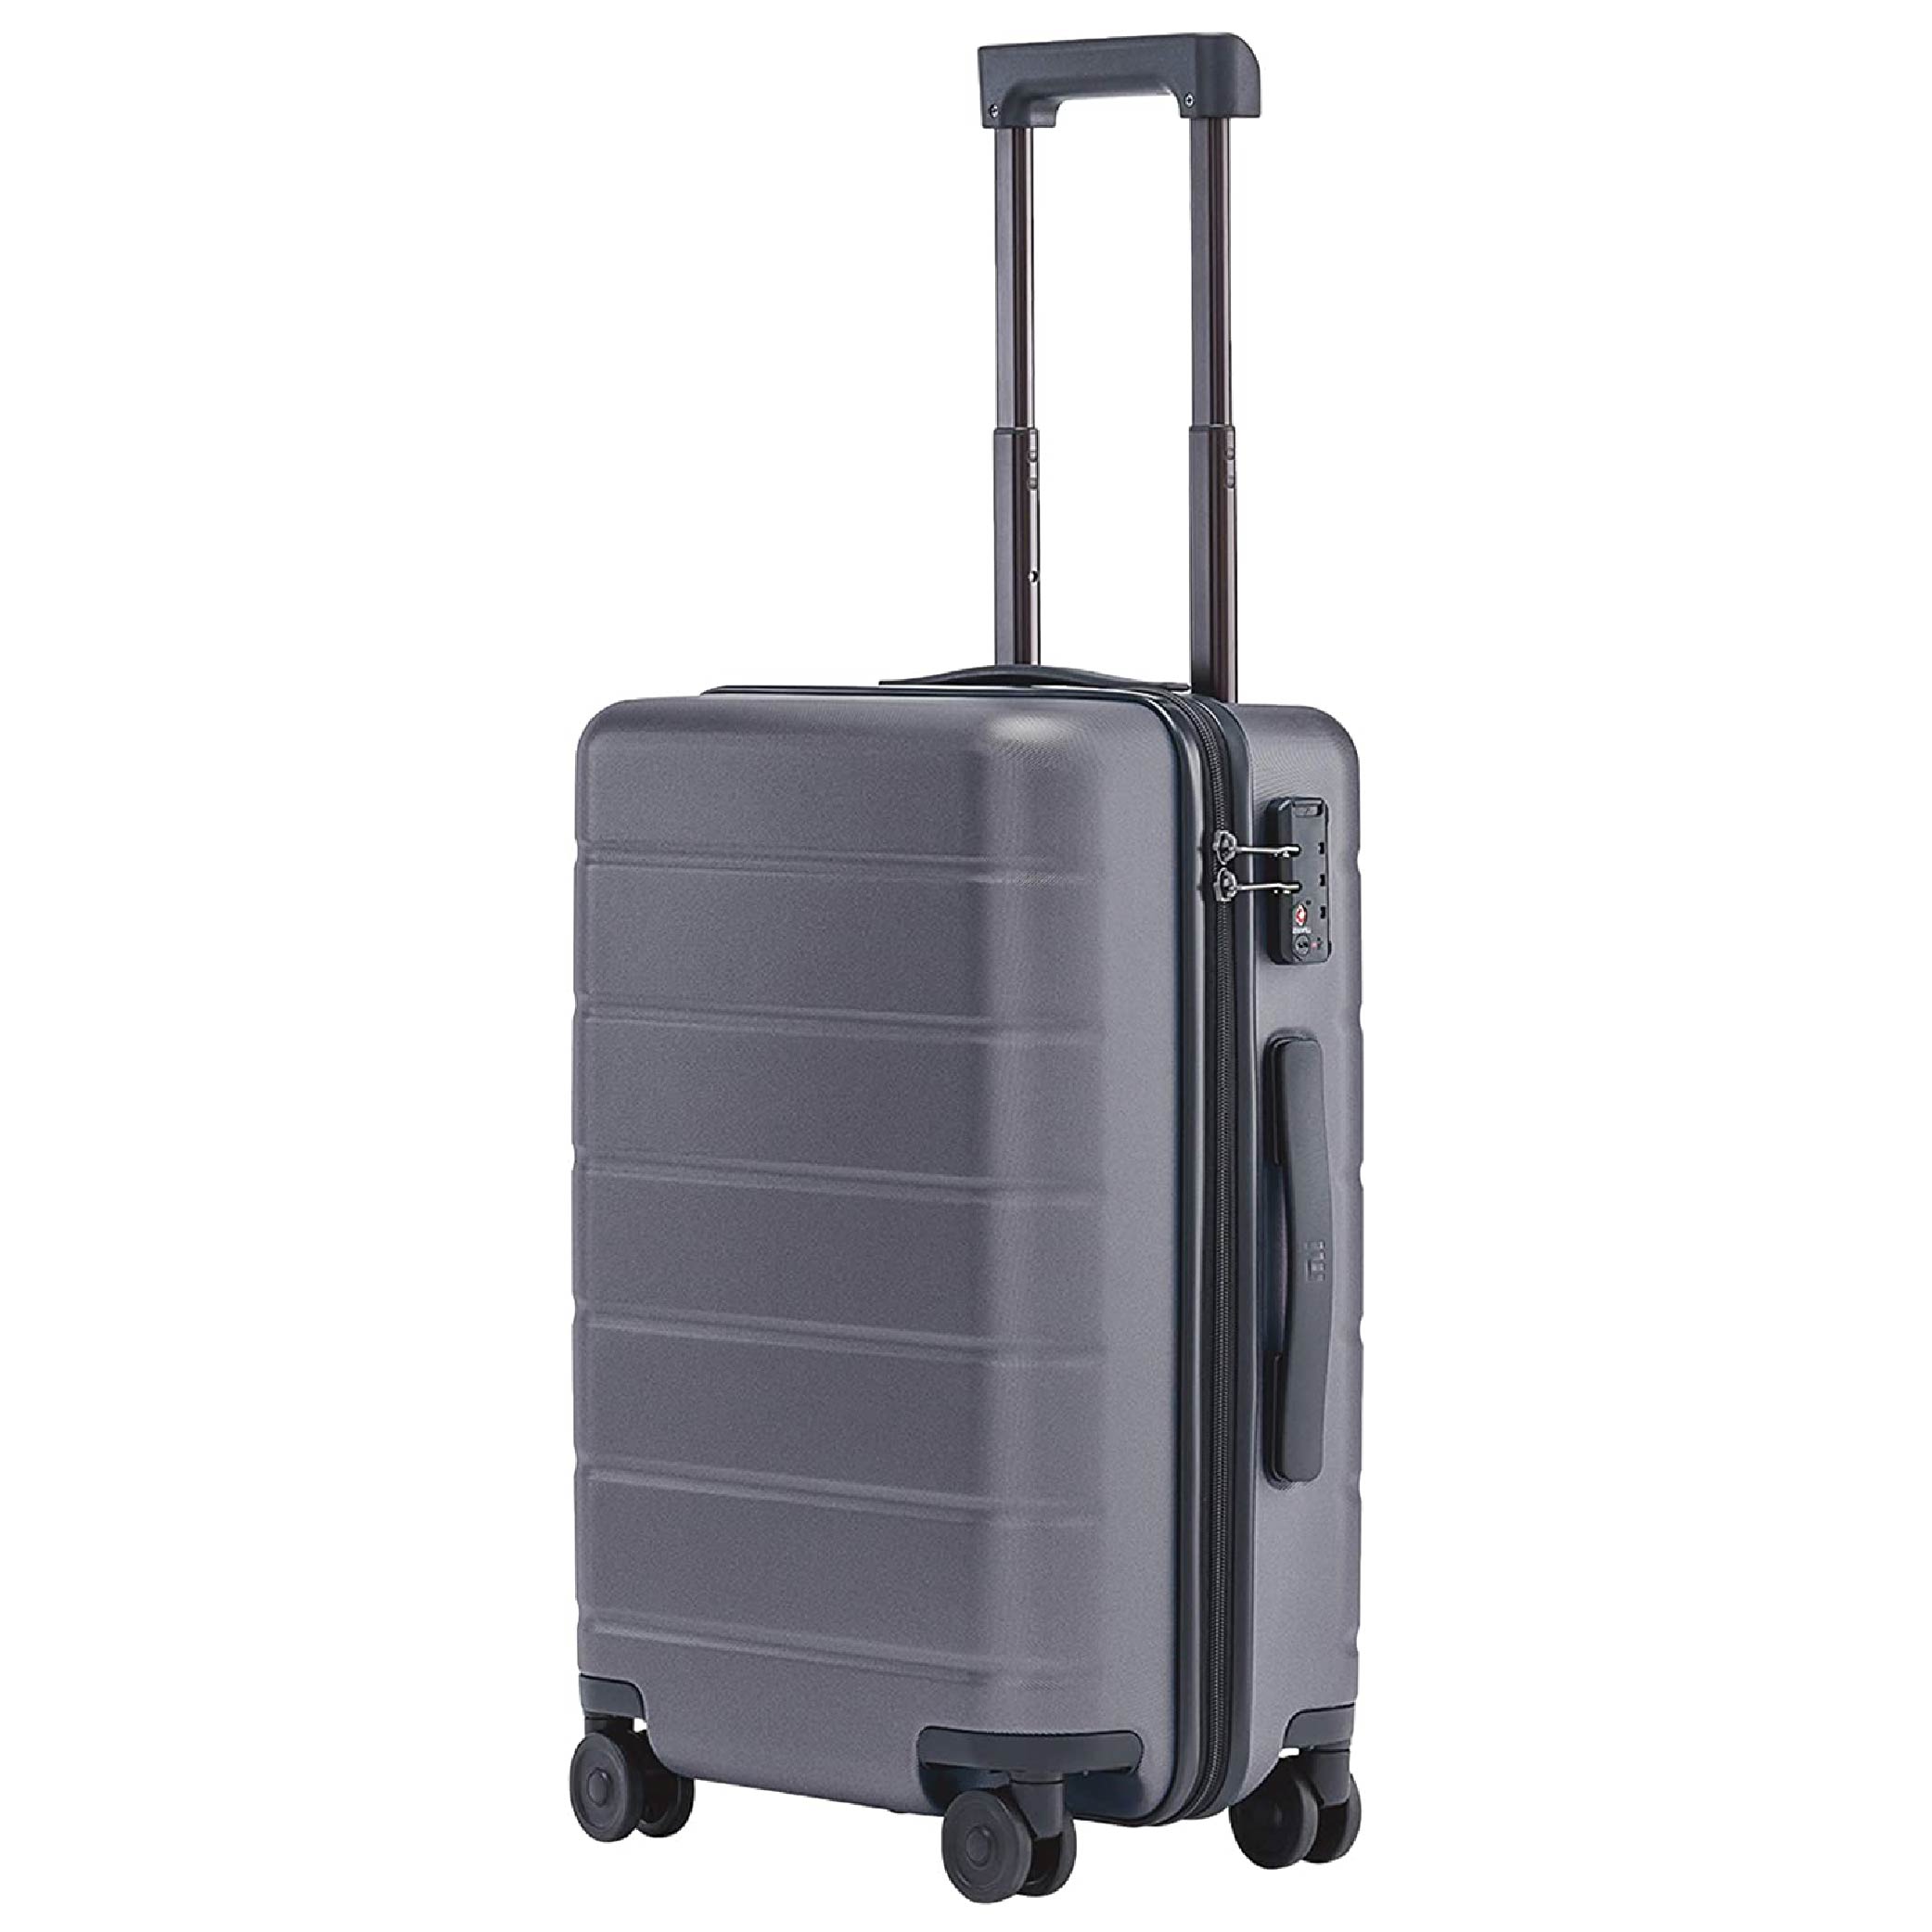 Mi Luggage Classic 20 Grau - 1-01